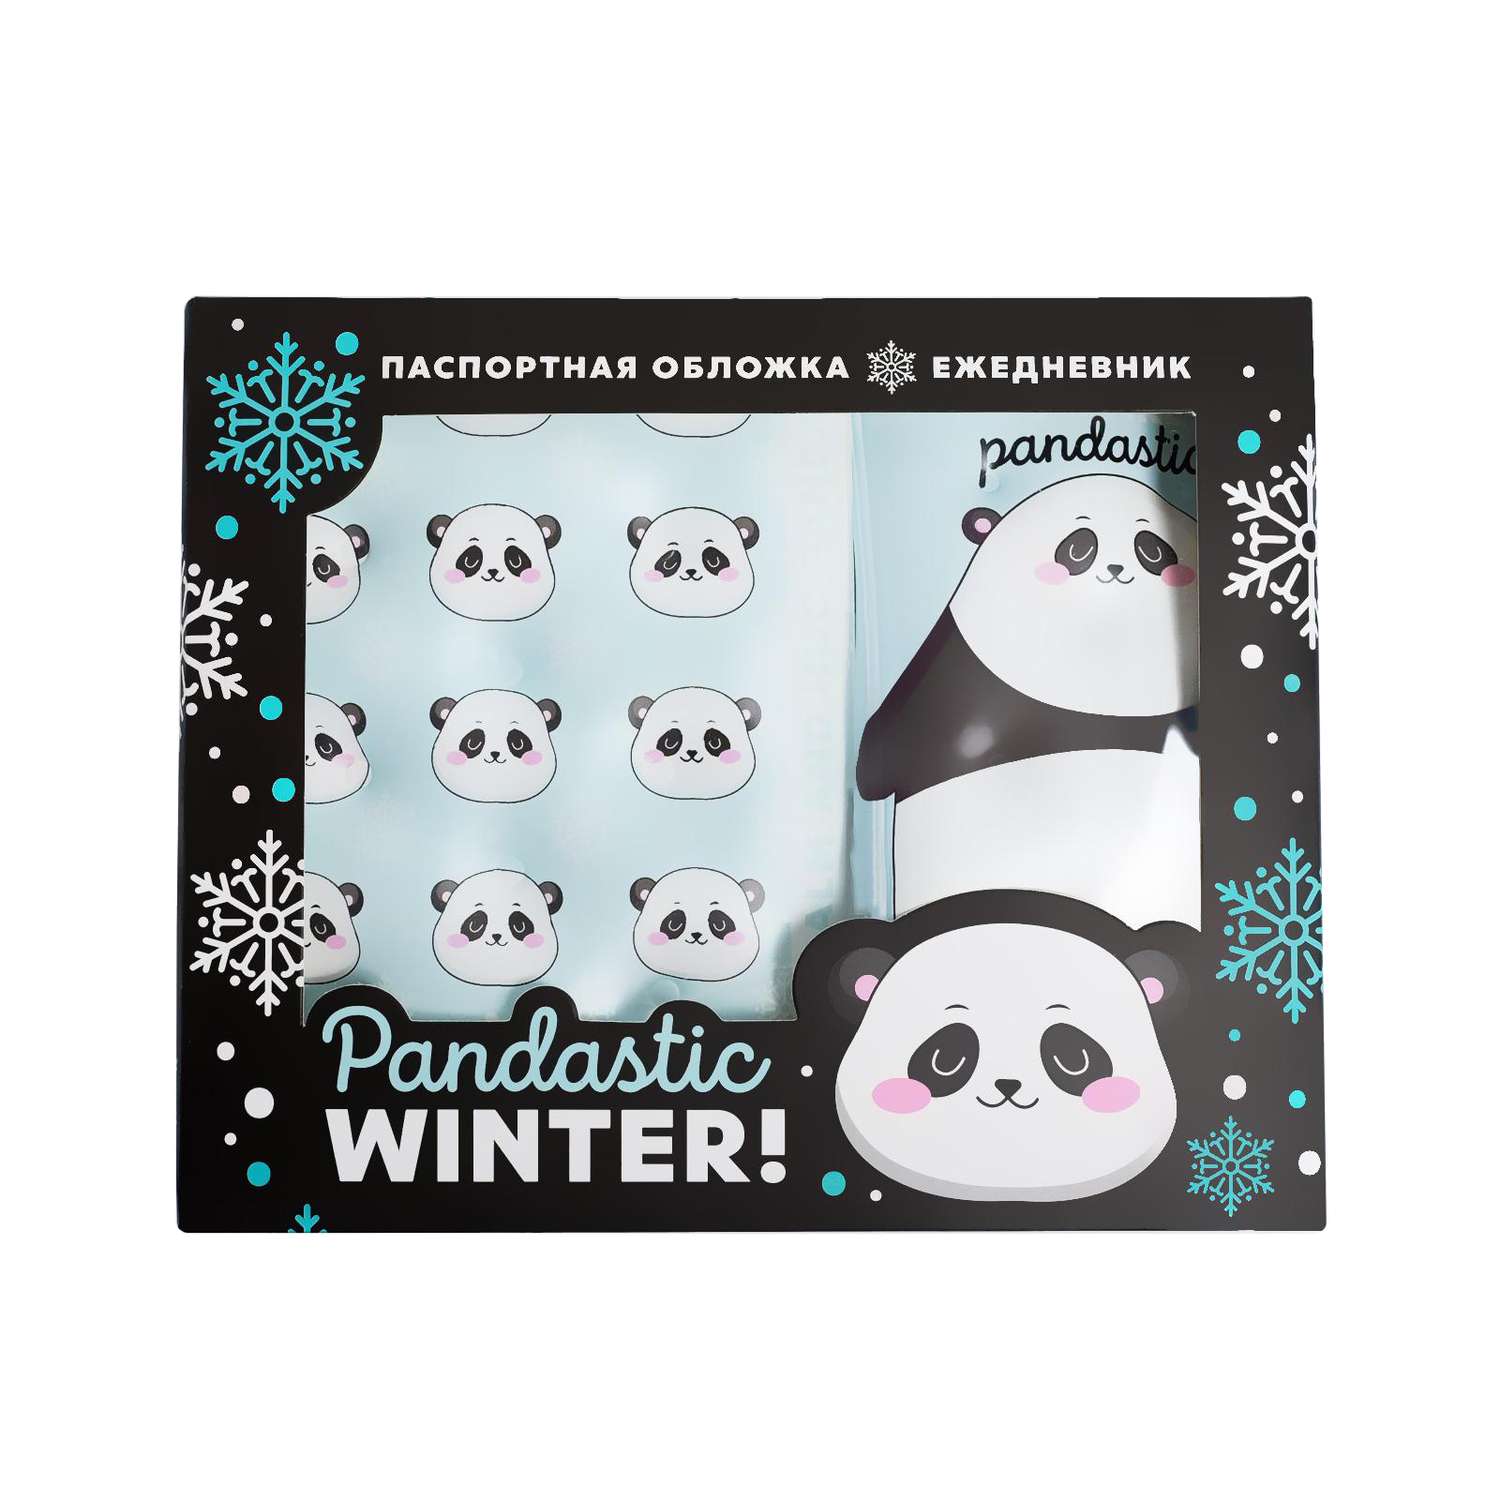 Набор ArtFox «Pandastic winter!». Паспортная обложка-облачко и ежедневник-облачко - фото 1